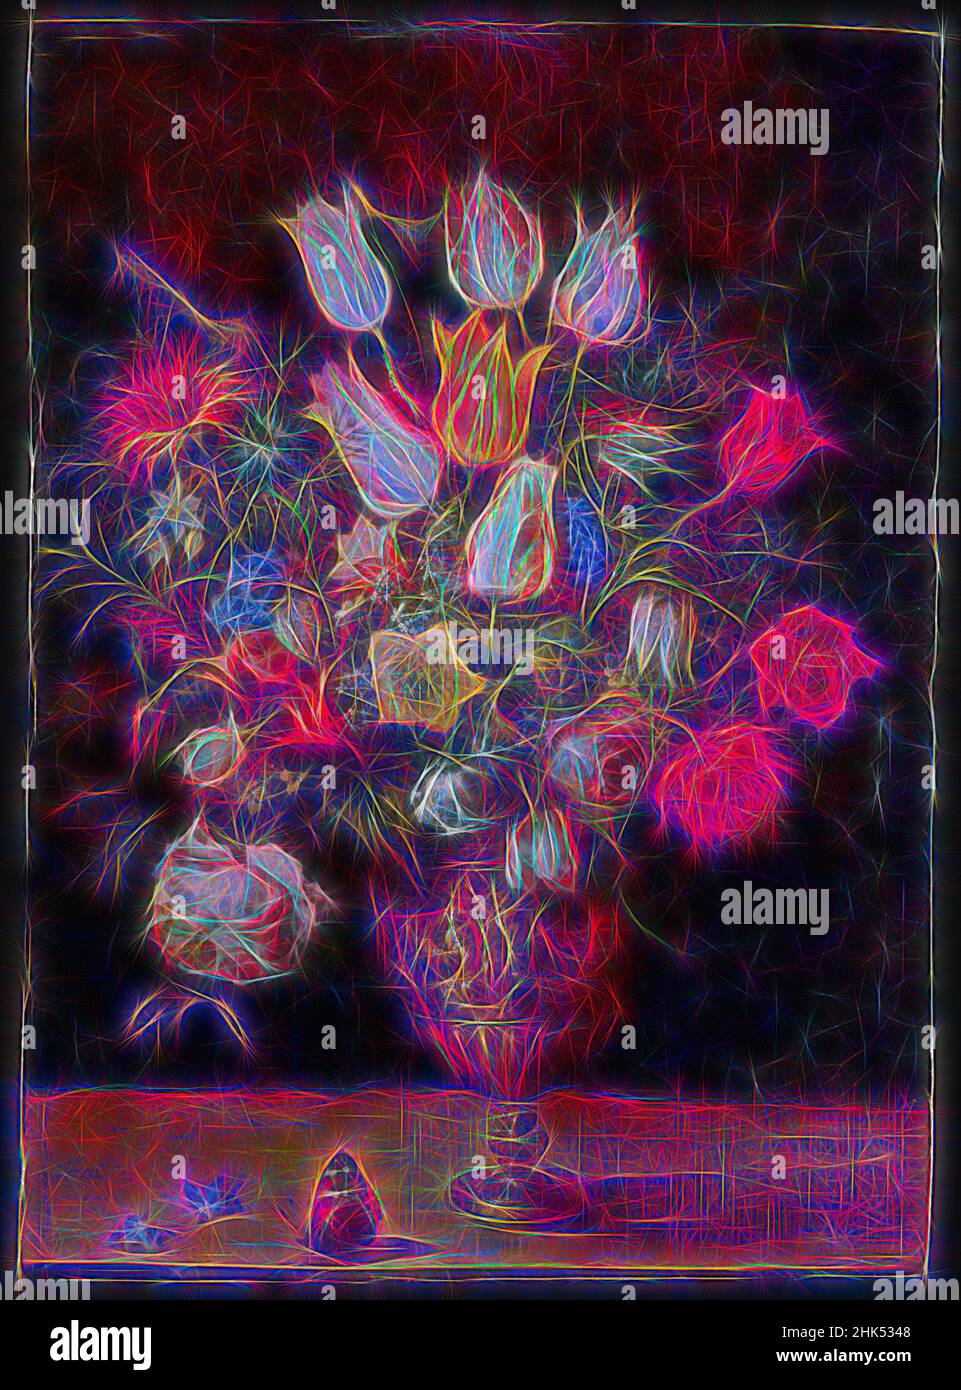 Inspiré par fleurs dans un vase, Gaspar van den Hoecke, flamand, 1575-1648, huile sur panneau, Europe, premier quart 17th siècle, 19 5/8 x 14 1/4 po, 49,8 x 36,2 cm, floral, fleurs, ndeu, huile sur panneau, Encore-vie, vase, meubles, sièges, repensé par Artotop. L'art classique réinventé avec une touche moderne. Conception de lumière chaleureuse et gaie, de luminosité et de rayonnement de lumière. La photographie s'inspire du surréalisme et du futurisme, embrassant l'énergie dynamique de la technologie moderne, du mouvement, de la vitesse et révolutionne la culture Banque D'Images